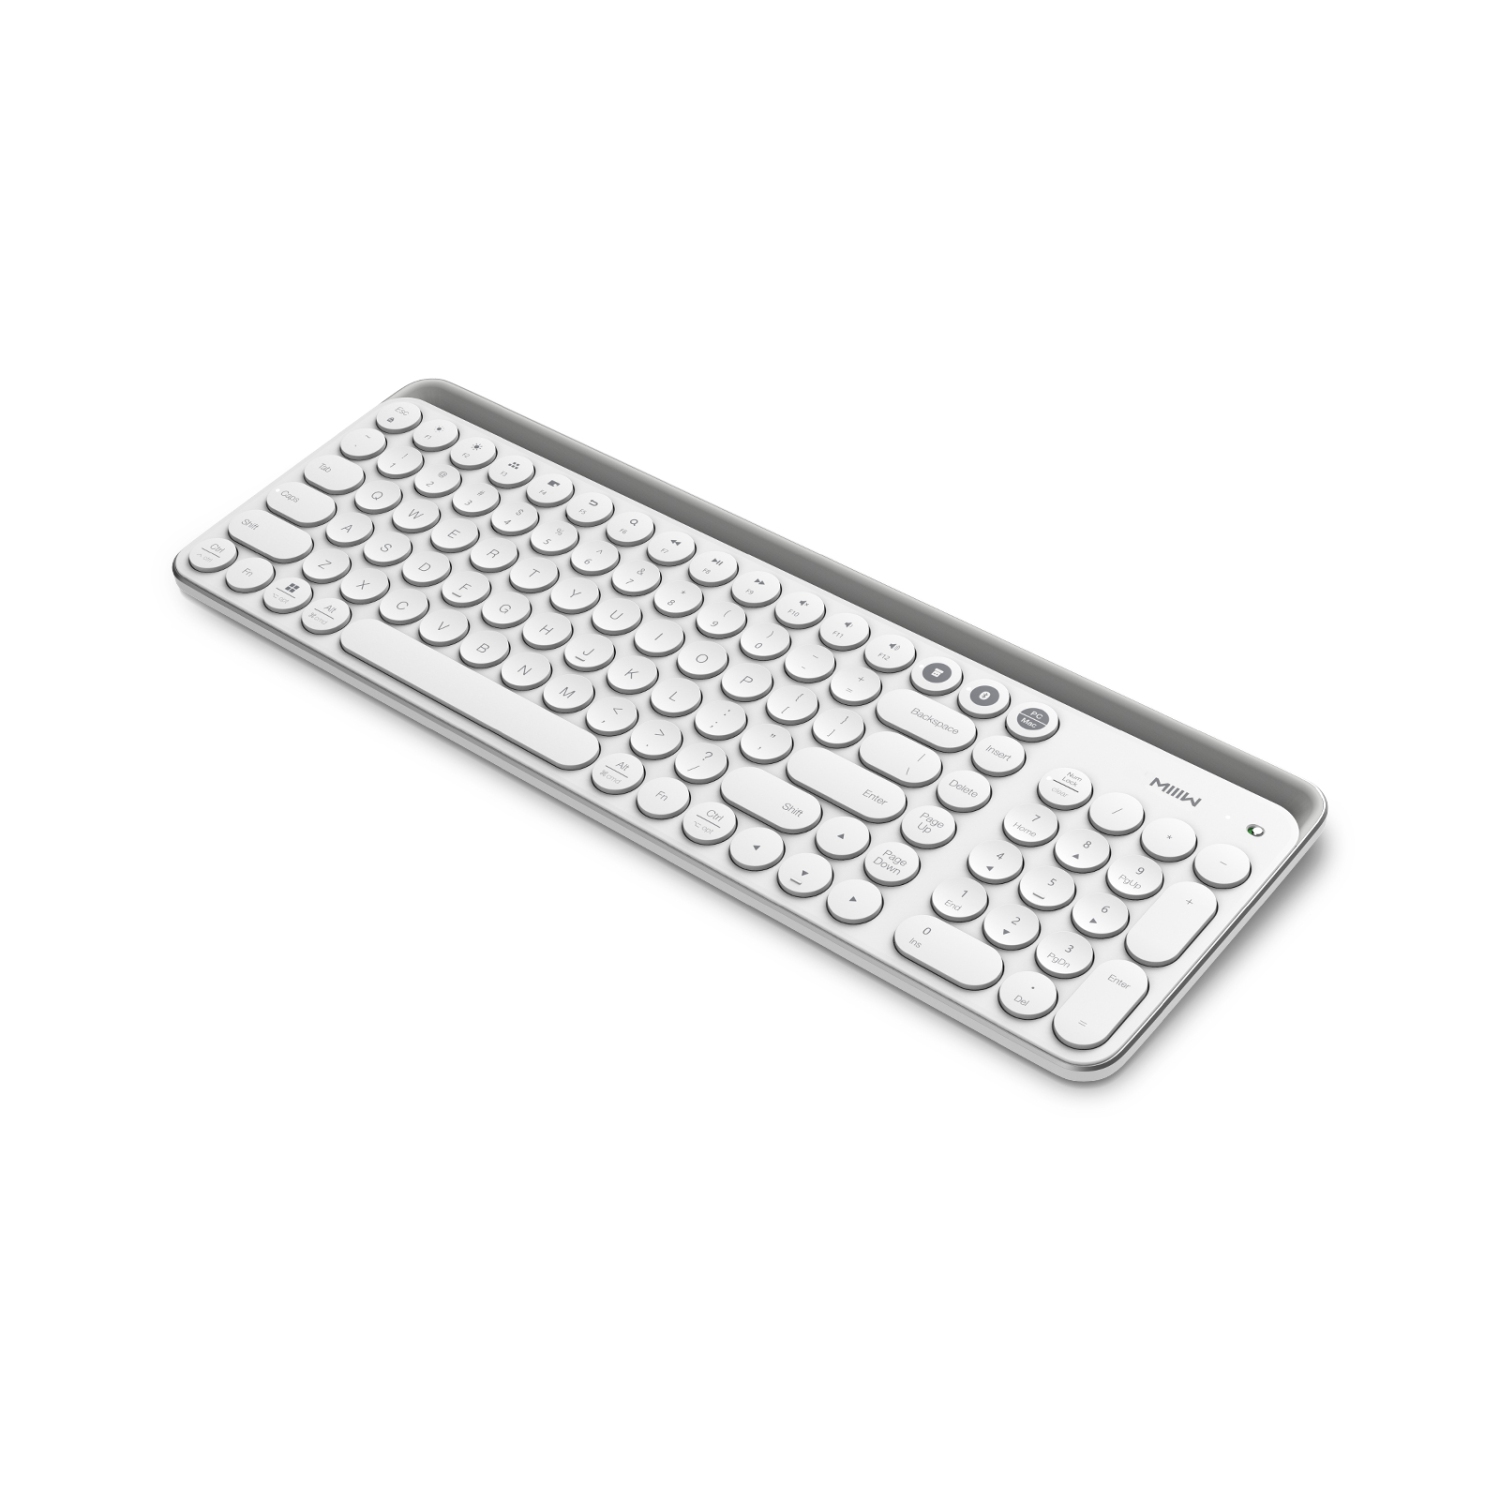 XIAOMI MIIIW K02 Dual-Mode Wireless Bluetooth Universal Keyboard, Scissor Switch, 102-Key, White